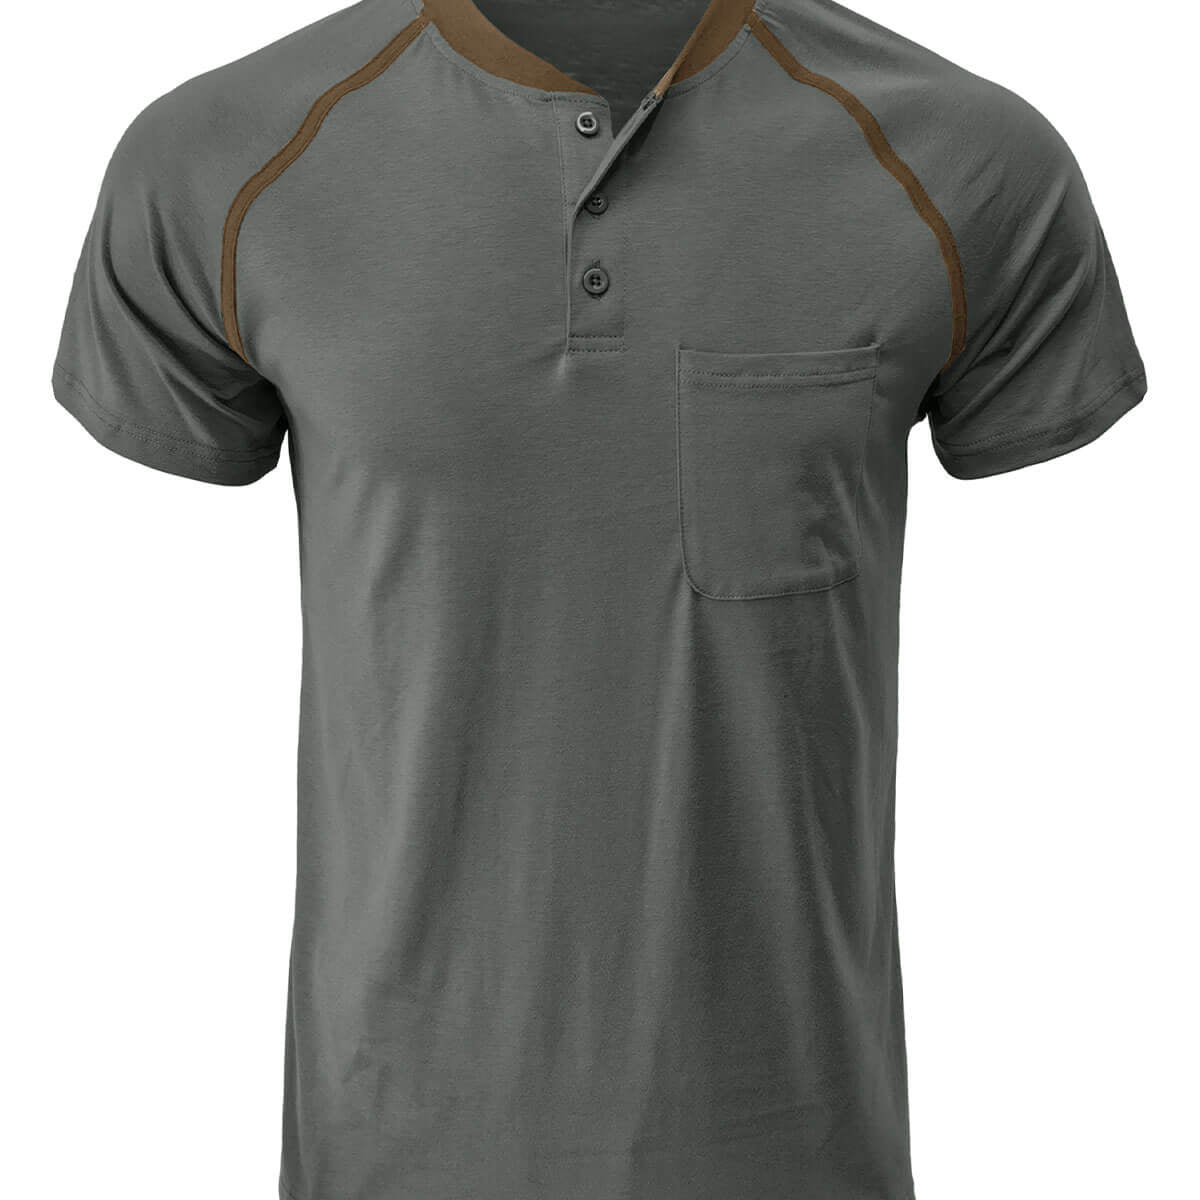 Men's Regular Fit Summer Casual Pocket Short Sleeve T-Shirt